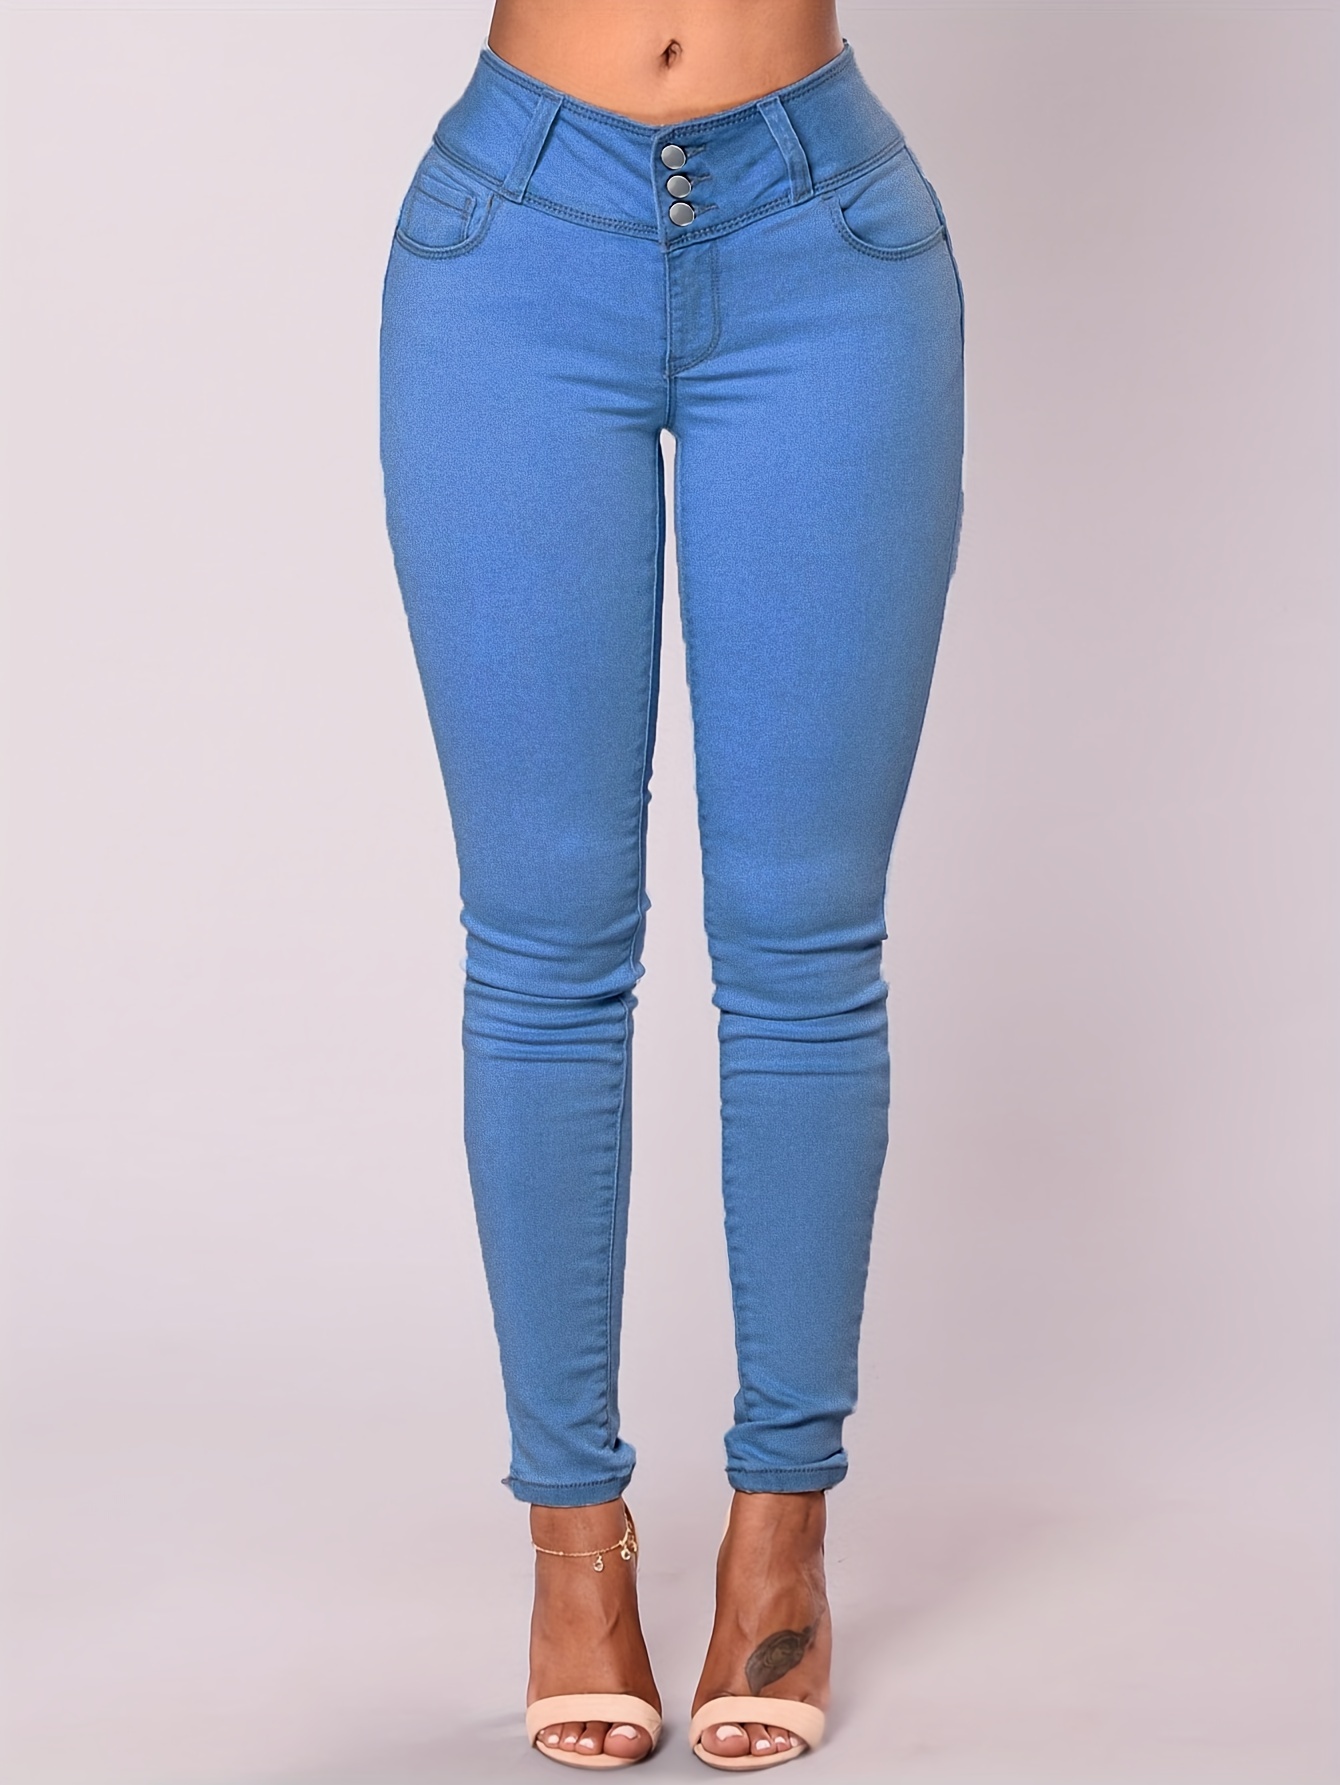 Blue *-Stretch Capris Denim Jeans, Slim Fit Slant Pockets Versatile Denim  Trousers, Women's Denim Jeans & Clothing